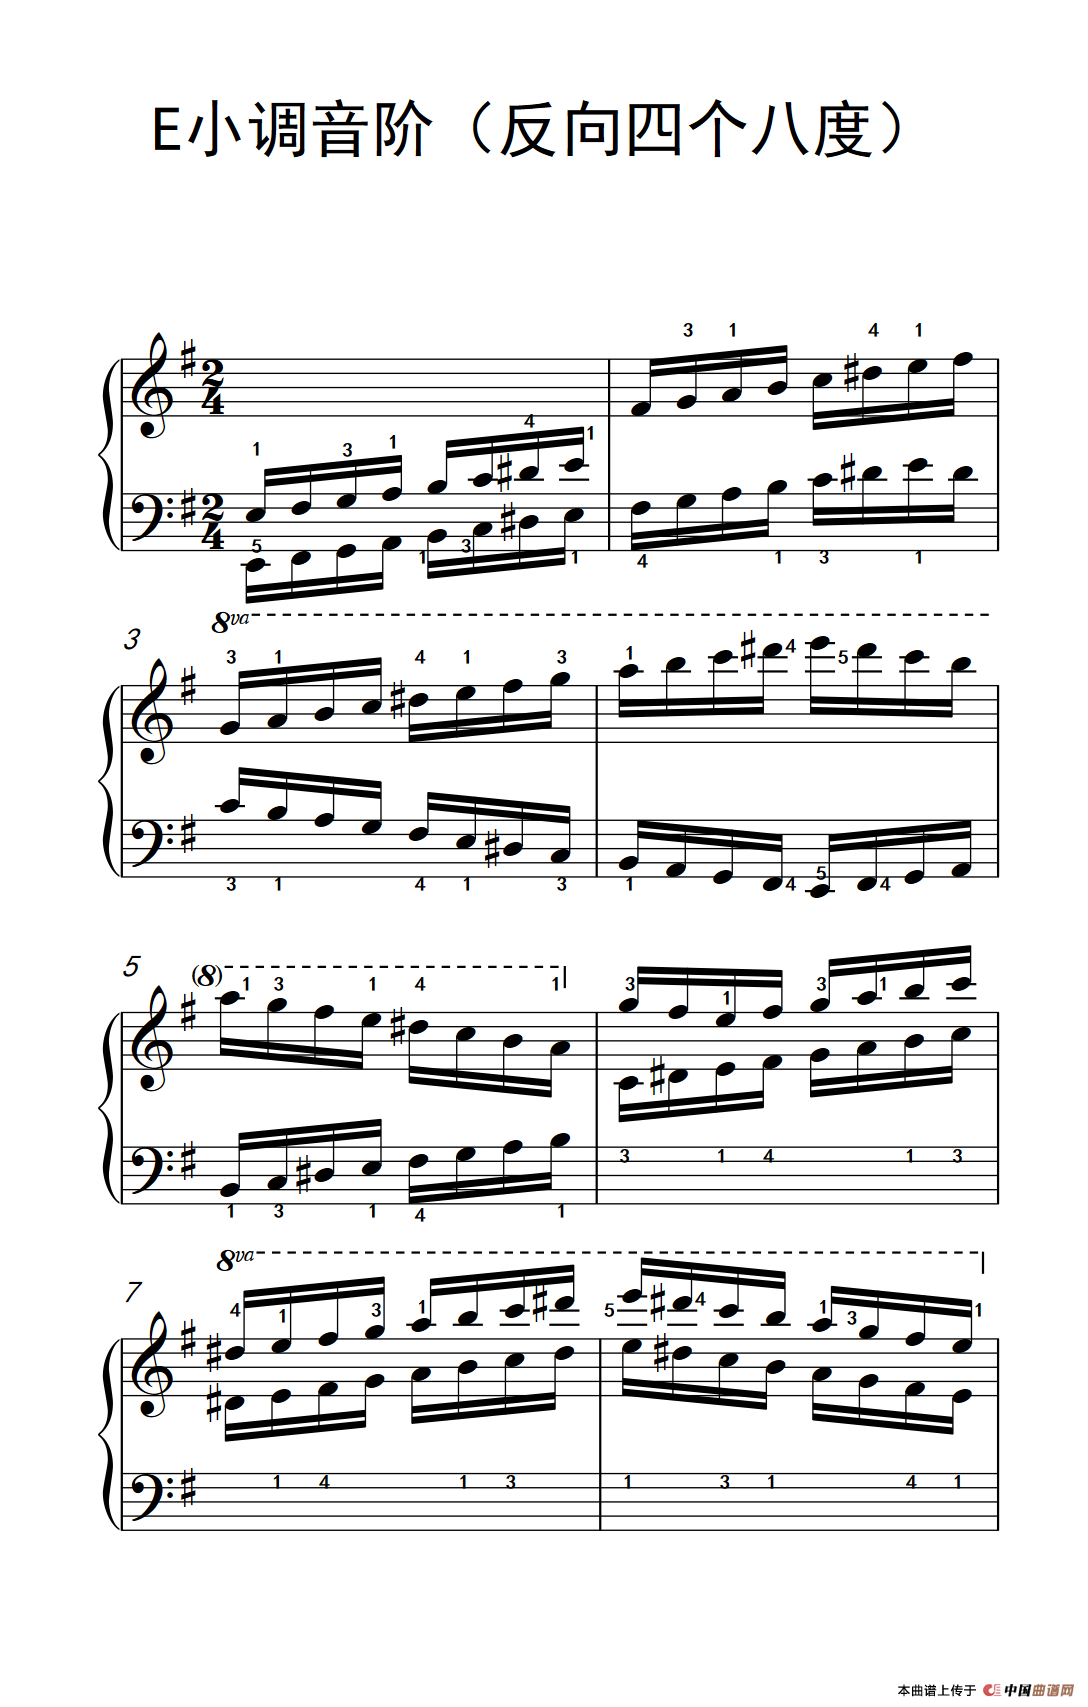 [钢琴谱] e小调音阶